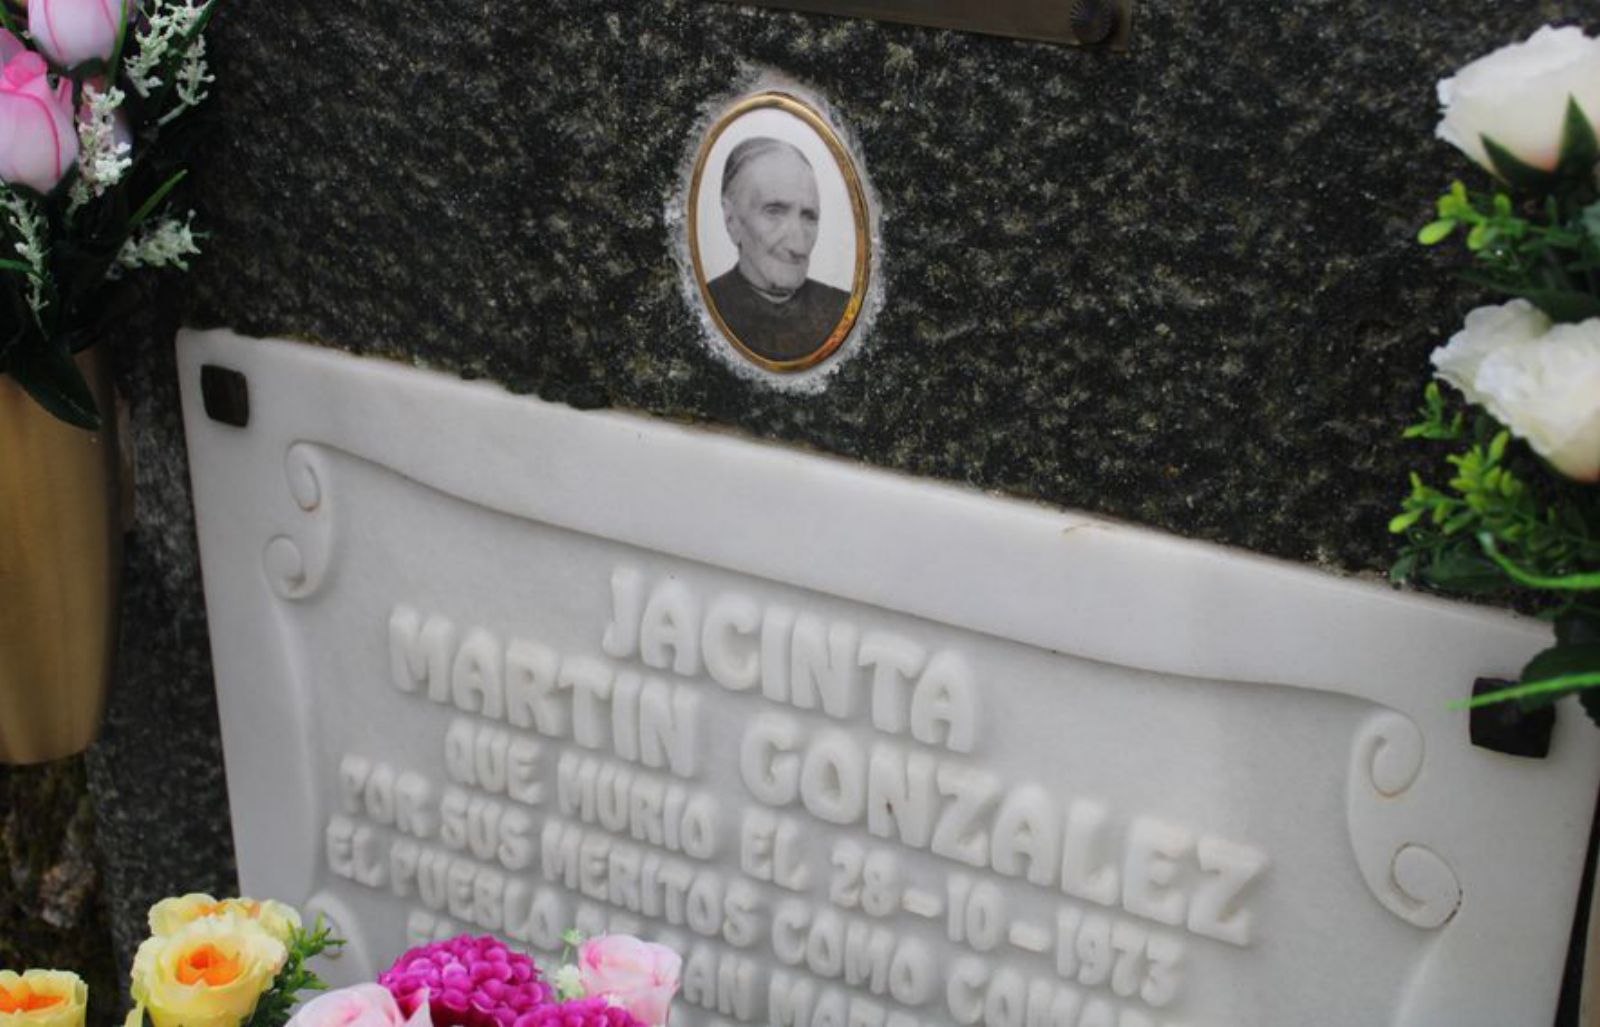 Placa del panteón de Jacinta Martín González.